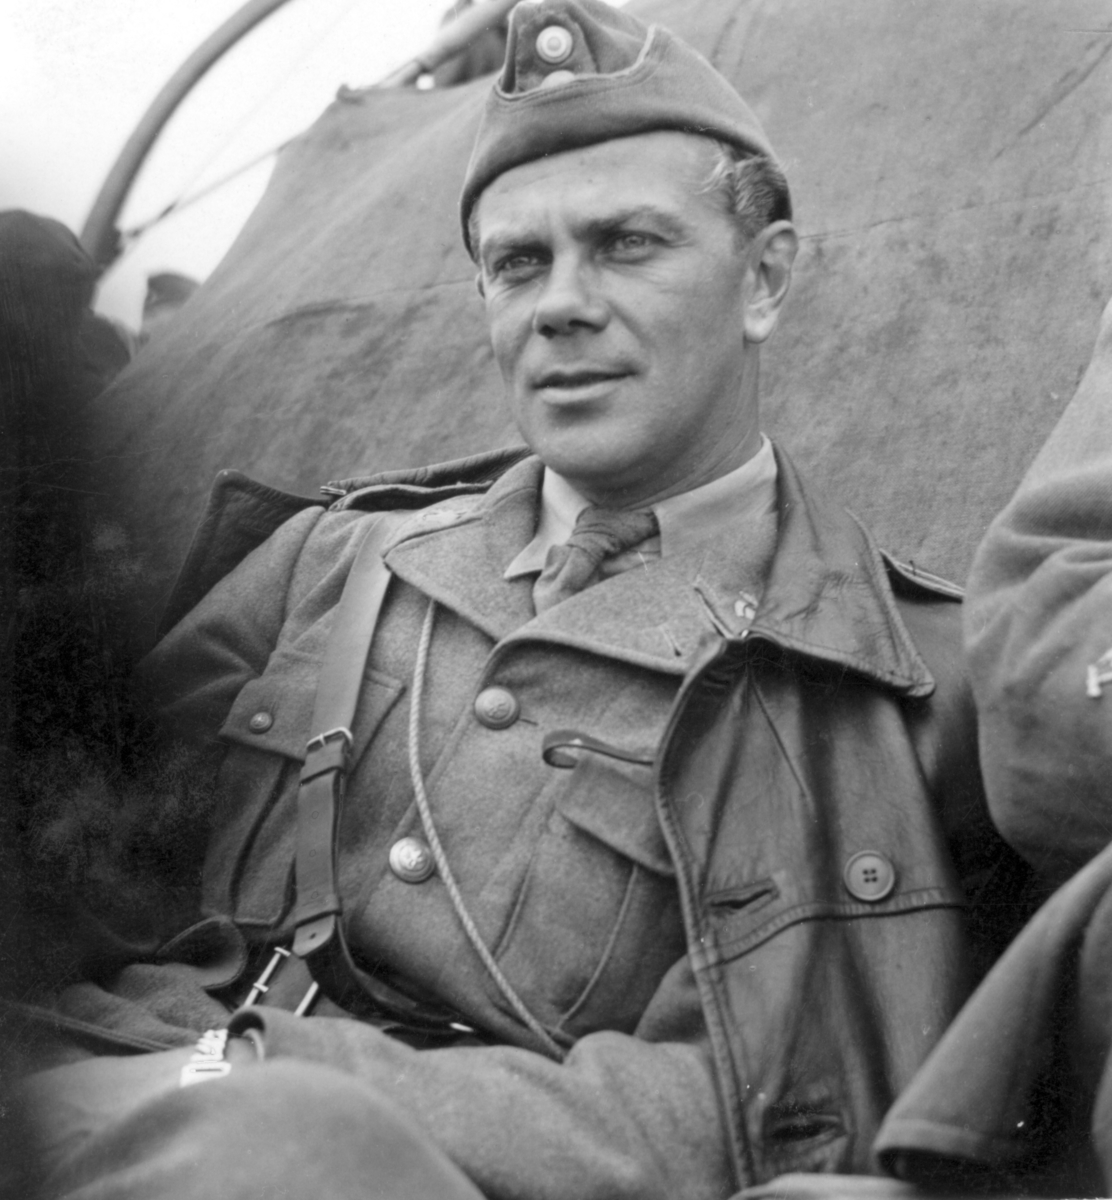 Sergeant Larsson (Pi-Lasse) P 3 på väg till Utö pansarskjutfält.